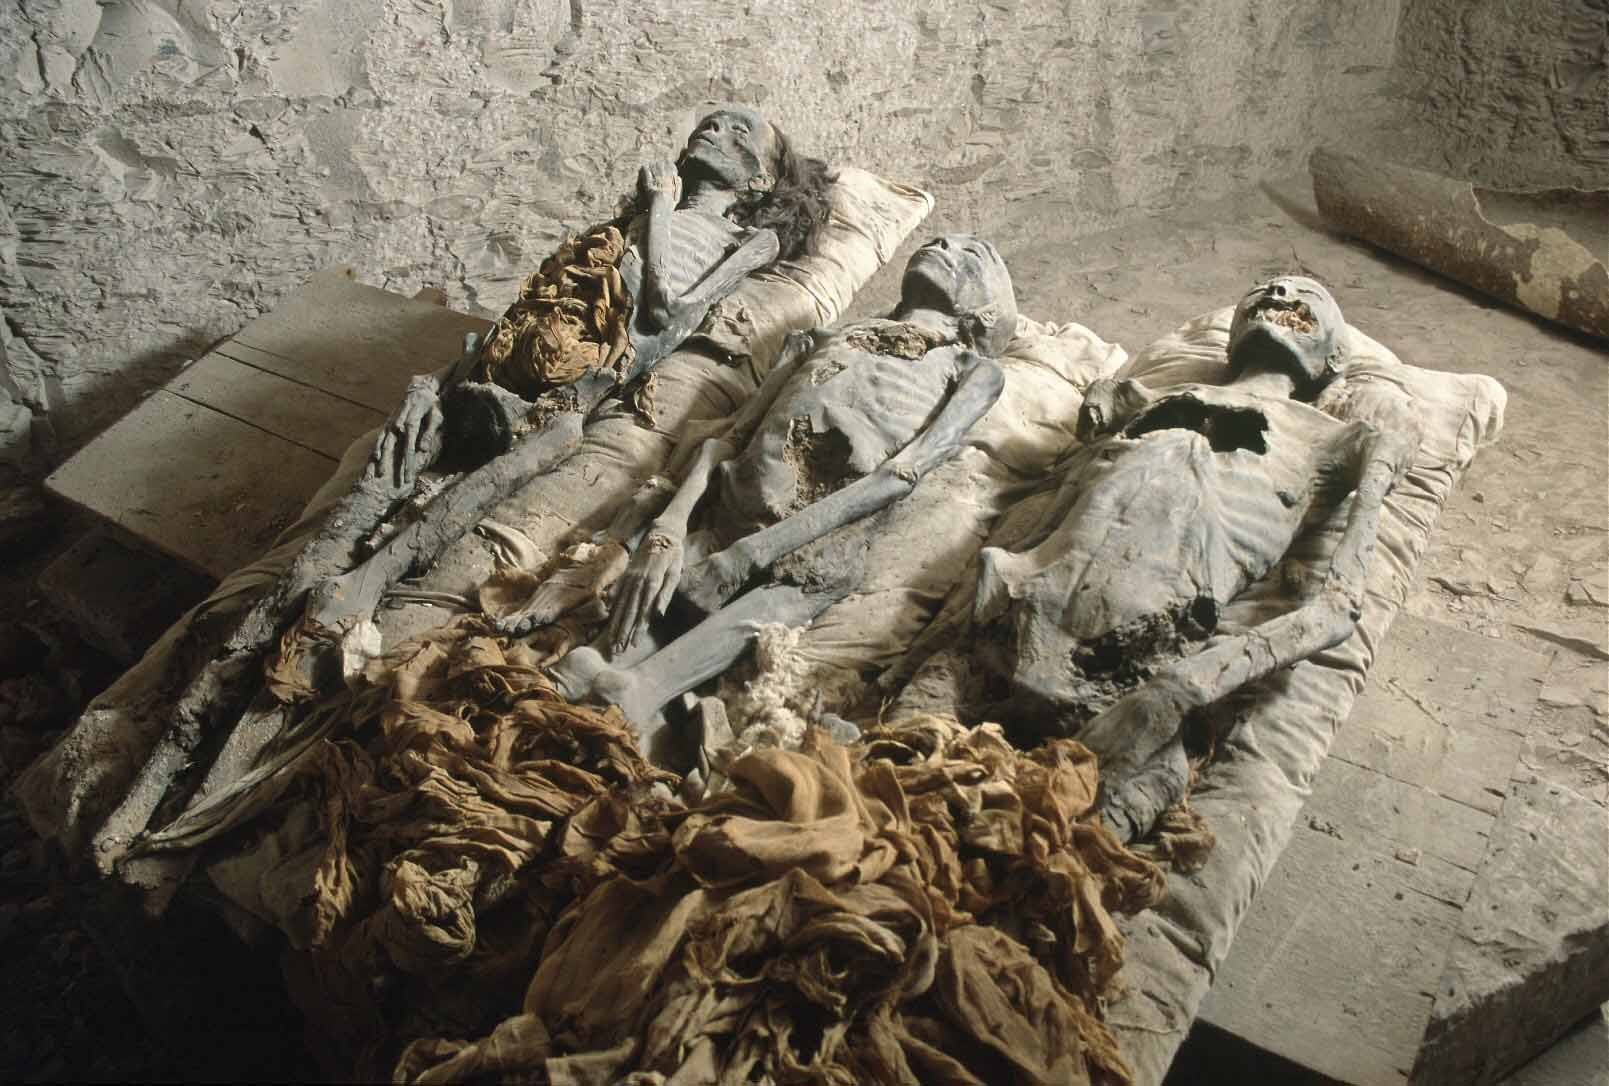 KV35 mezarında keşfedilen 3 mumya. Sırasıyla, en solda Kraliçe Tiye’te ait “Yaşlı Kadın” mumyası, ortada Webensenu ya da Prens Thutmose olduğu düşünülen genç çocuk mumyası ve en sağda Nefertiti olduğu düşünülen “Genç Kadın” mumyası. Fotoğraf: Discovery Channel Arşivi